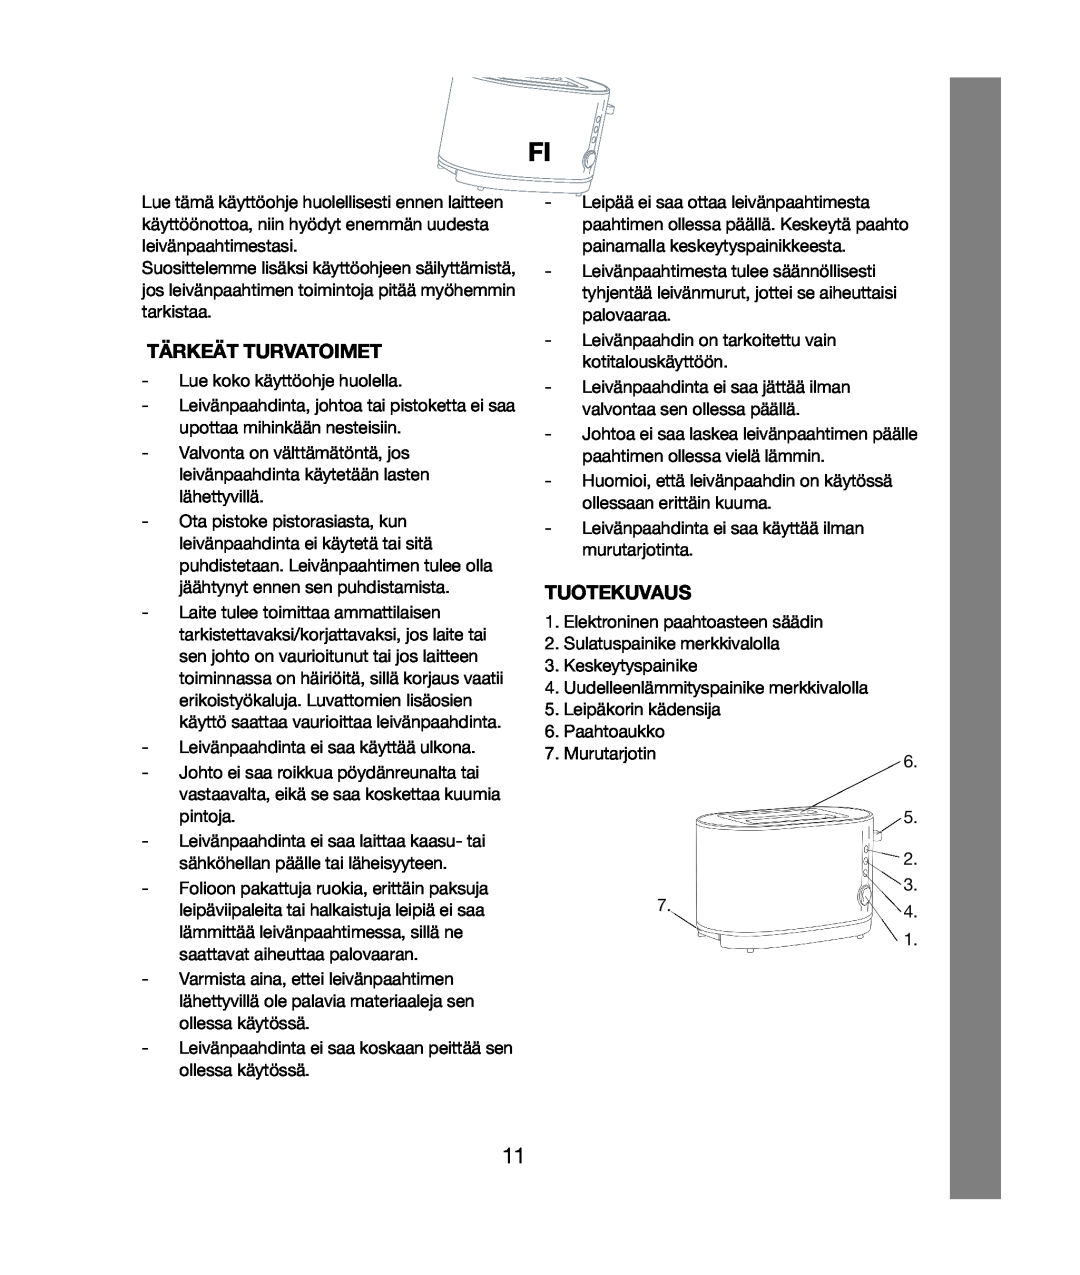 Melissa 243-020 & 021 manual Tärkeät Turvatoimet, Tuotekuvaus 